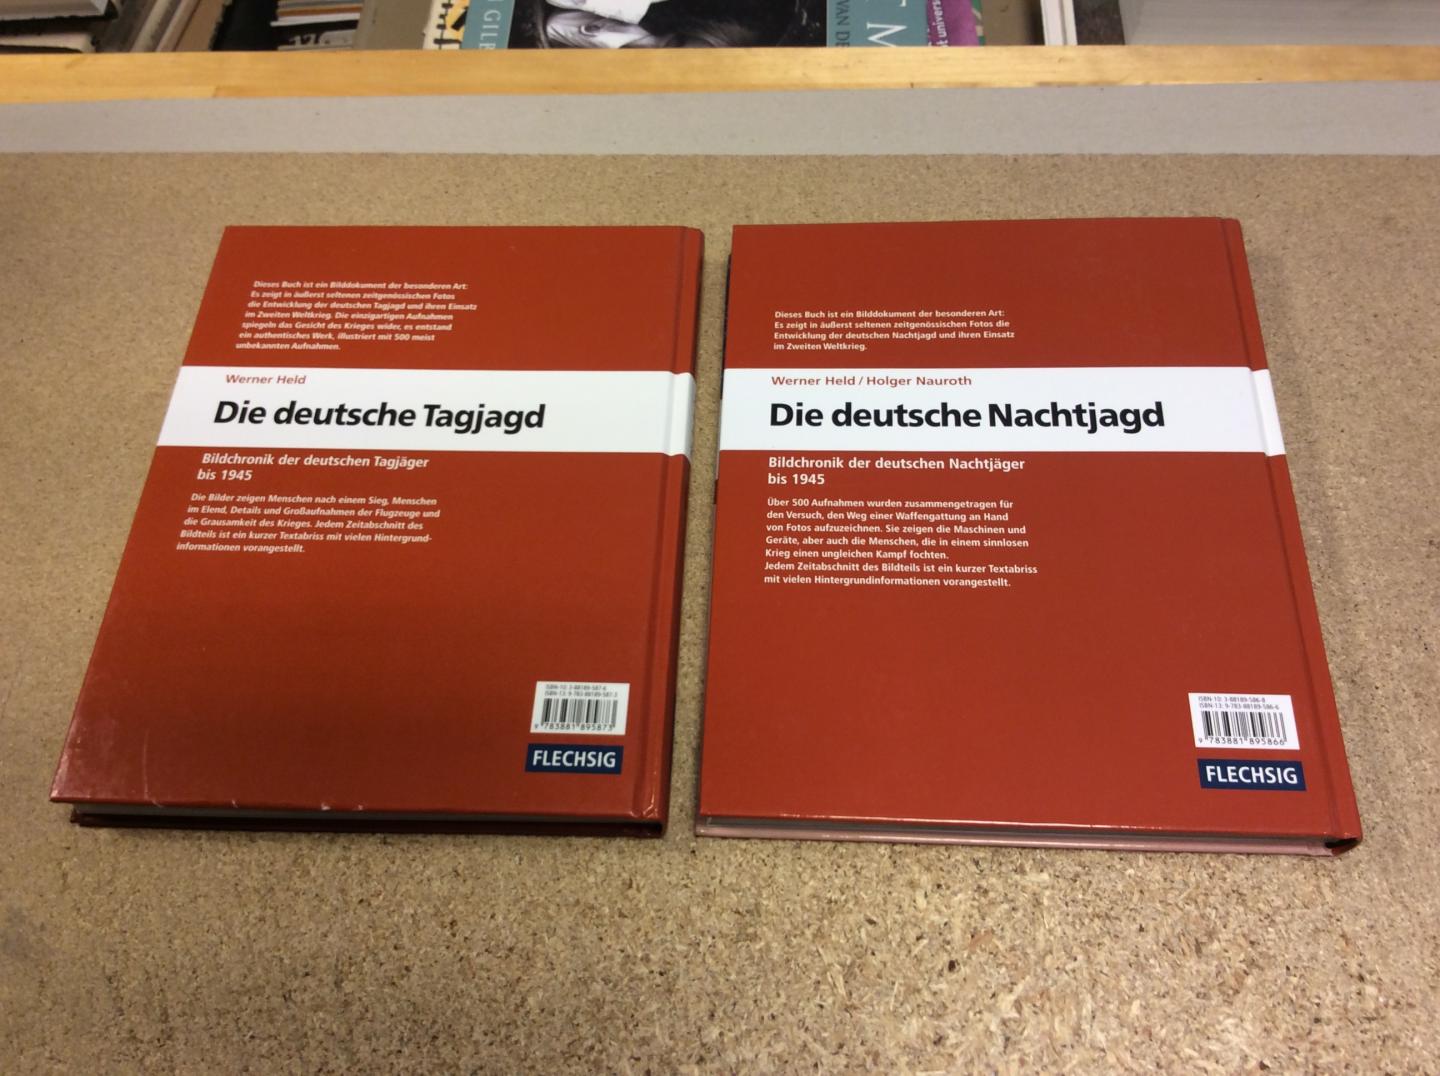 Held, Werner / Holger Nauroth - Die deutsche Tagjagd. Bildchronik der deutschen Tagjäger bis 1945 + Die deutsche Nachtjagd. Bildchronik der deutschen Nachtjäger bis 1945 (2 delen)